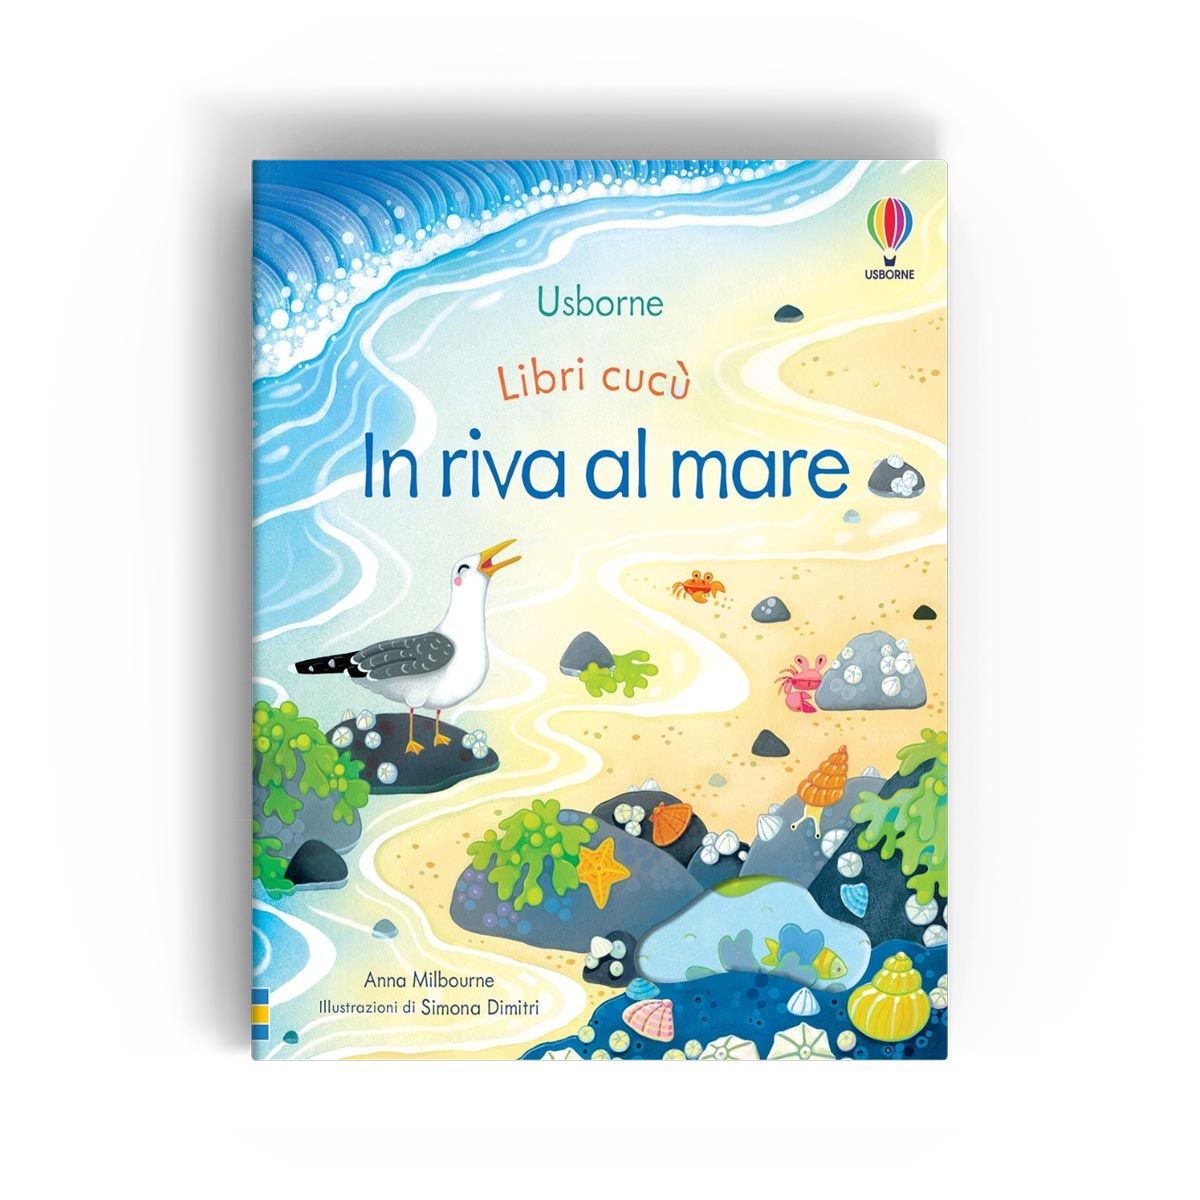 https://italiano-bello.com/wp-content/uploads/2022/01/Usborne-Libri-cucu%CC%80-%E2%80%93-In-riva-al-mare-Cover.jpg